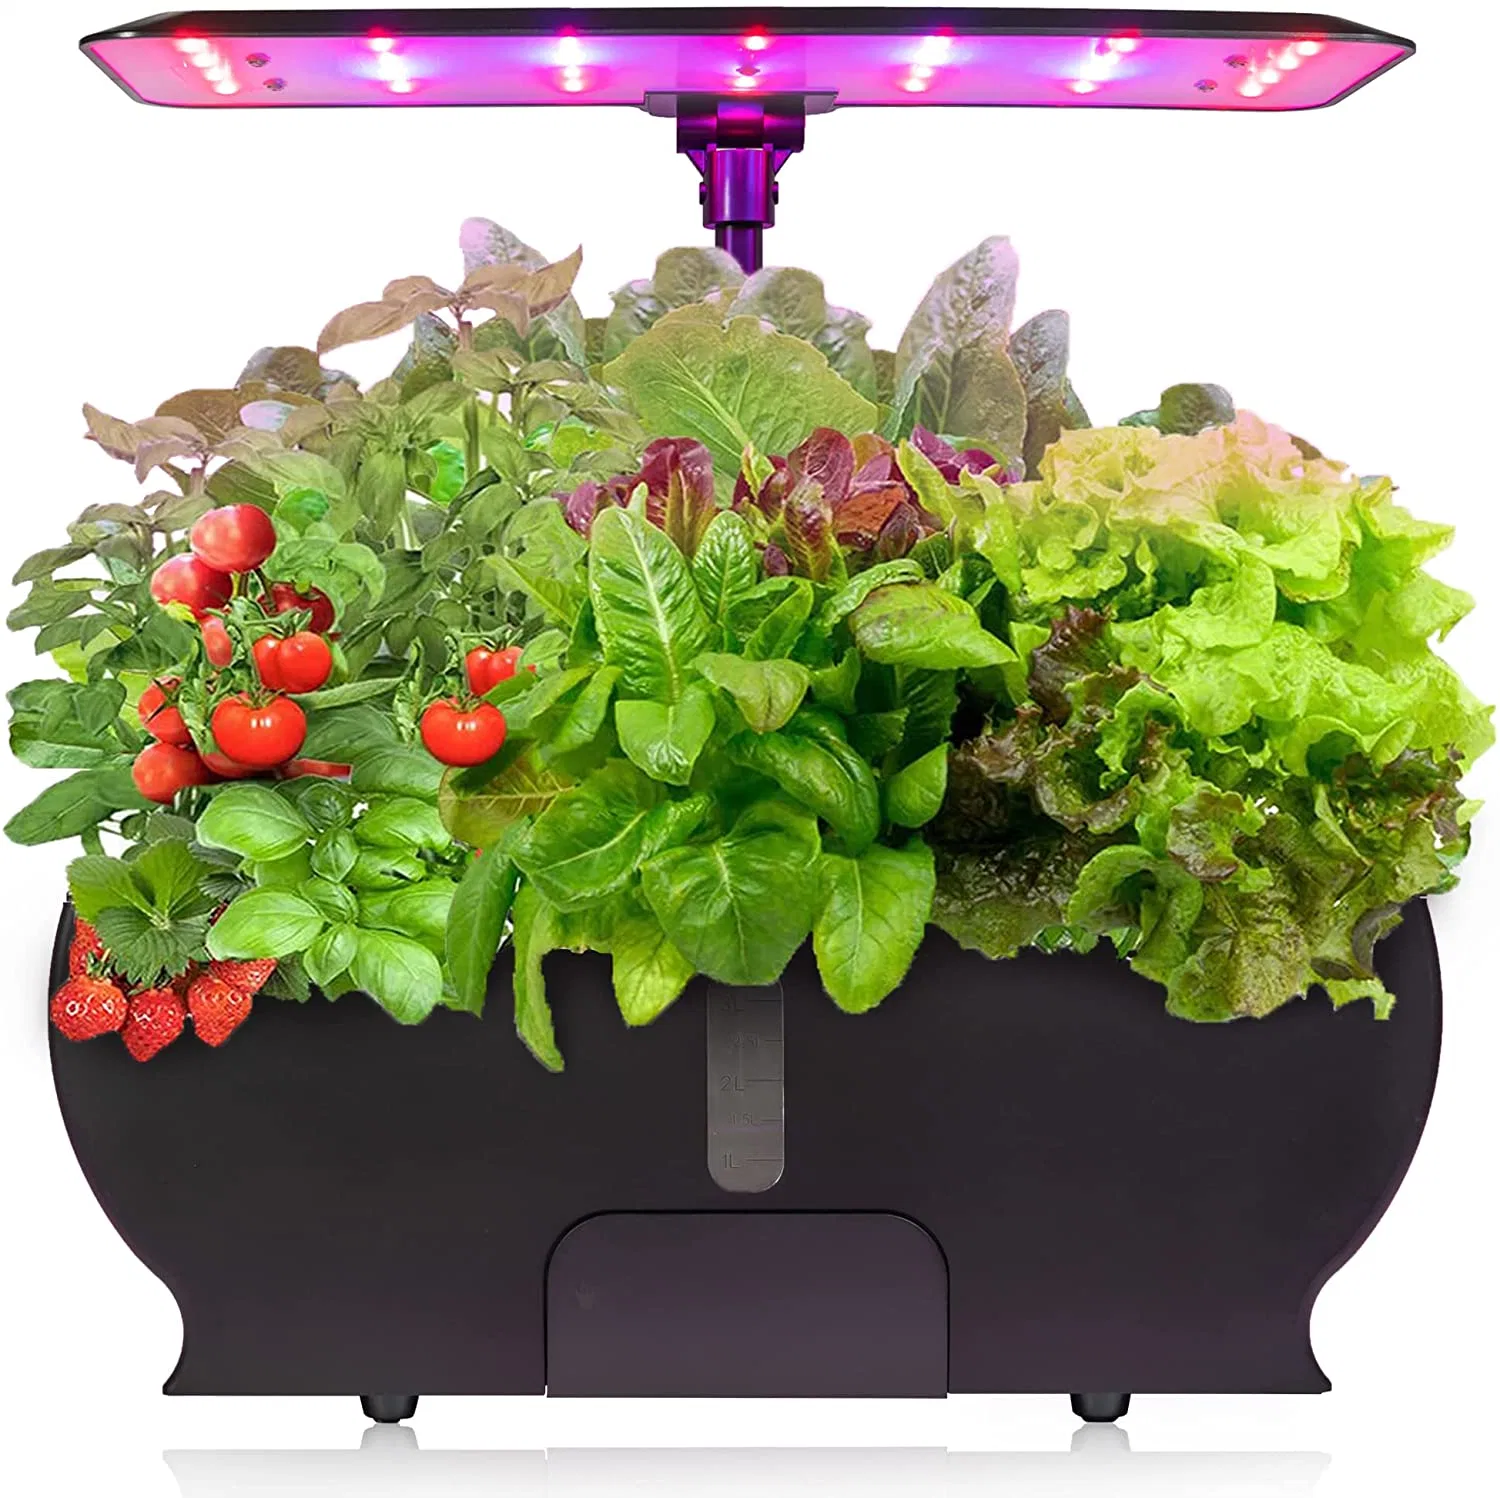 Smart Planter Indor Herb Garden Vertical GROW Tower LED داخلي نظام نمو الهيدروكاريات